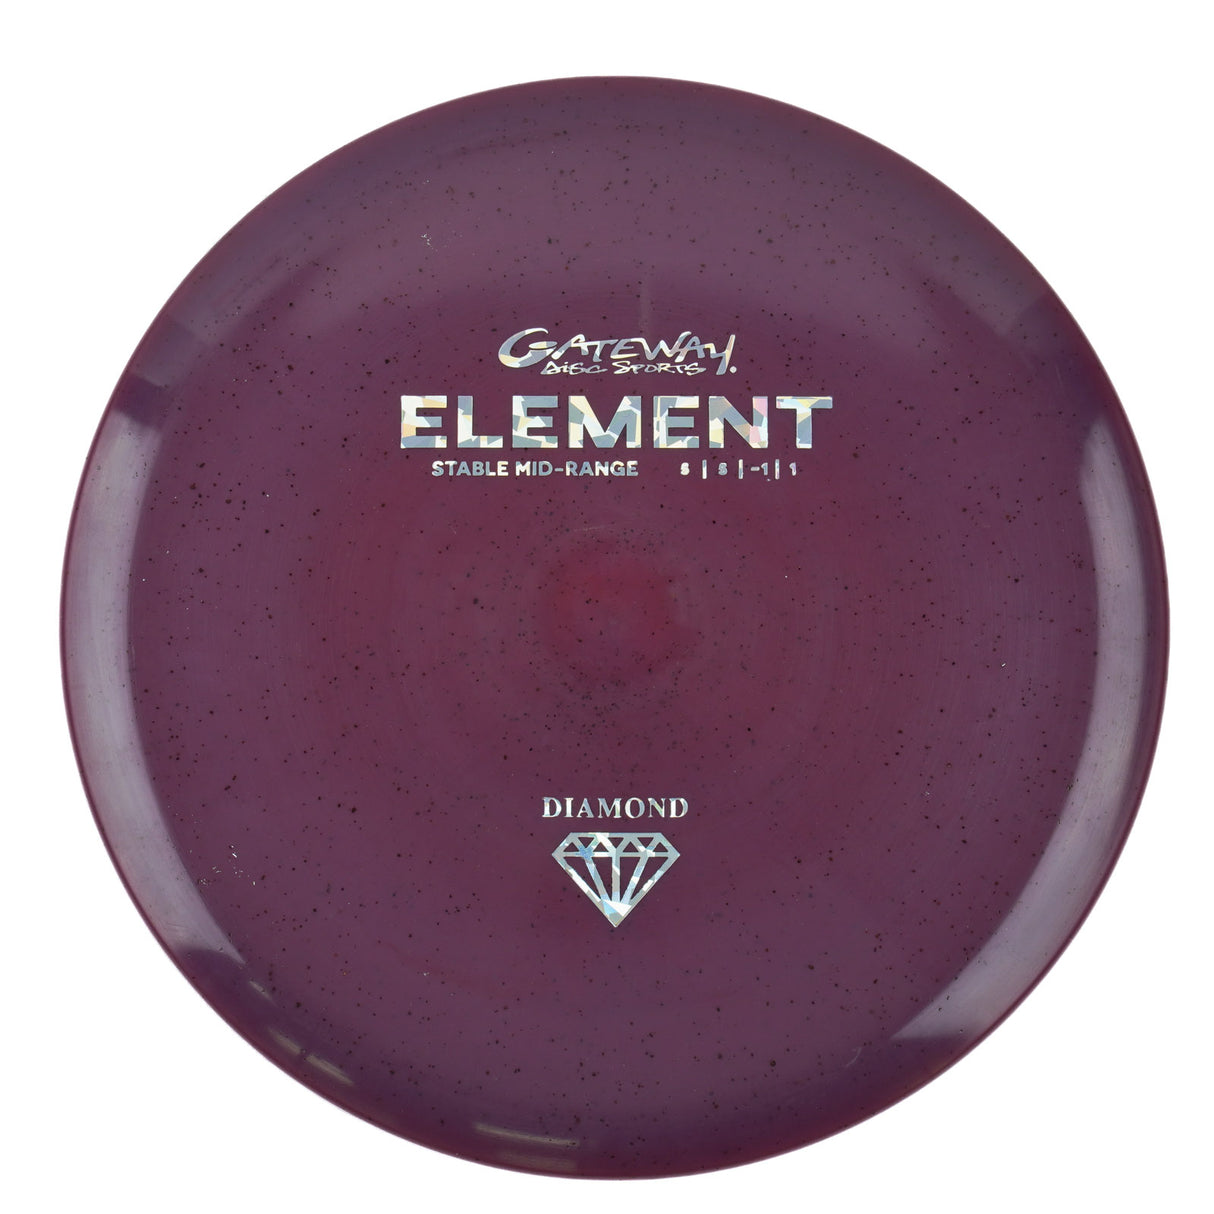 Gateway Element - Diamond Metal Flake 175g | Style 0001